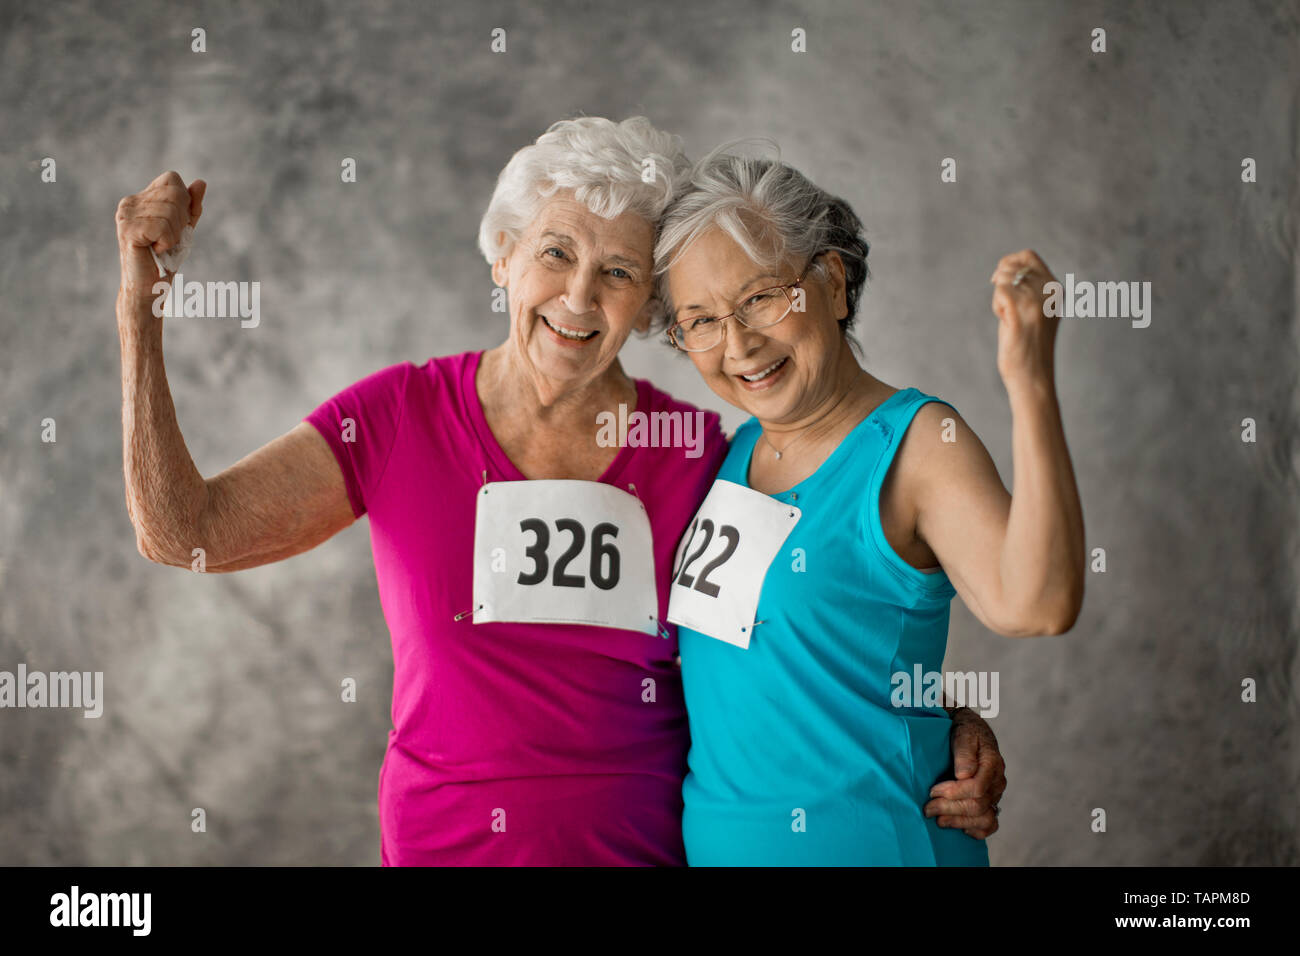 Portrait of two smiling senior women. Stock Photo